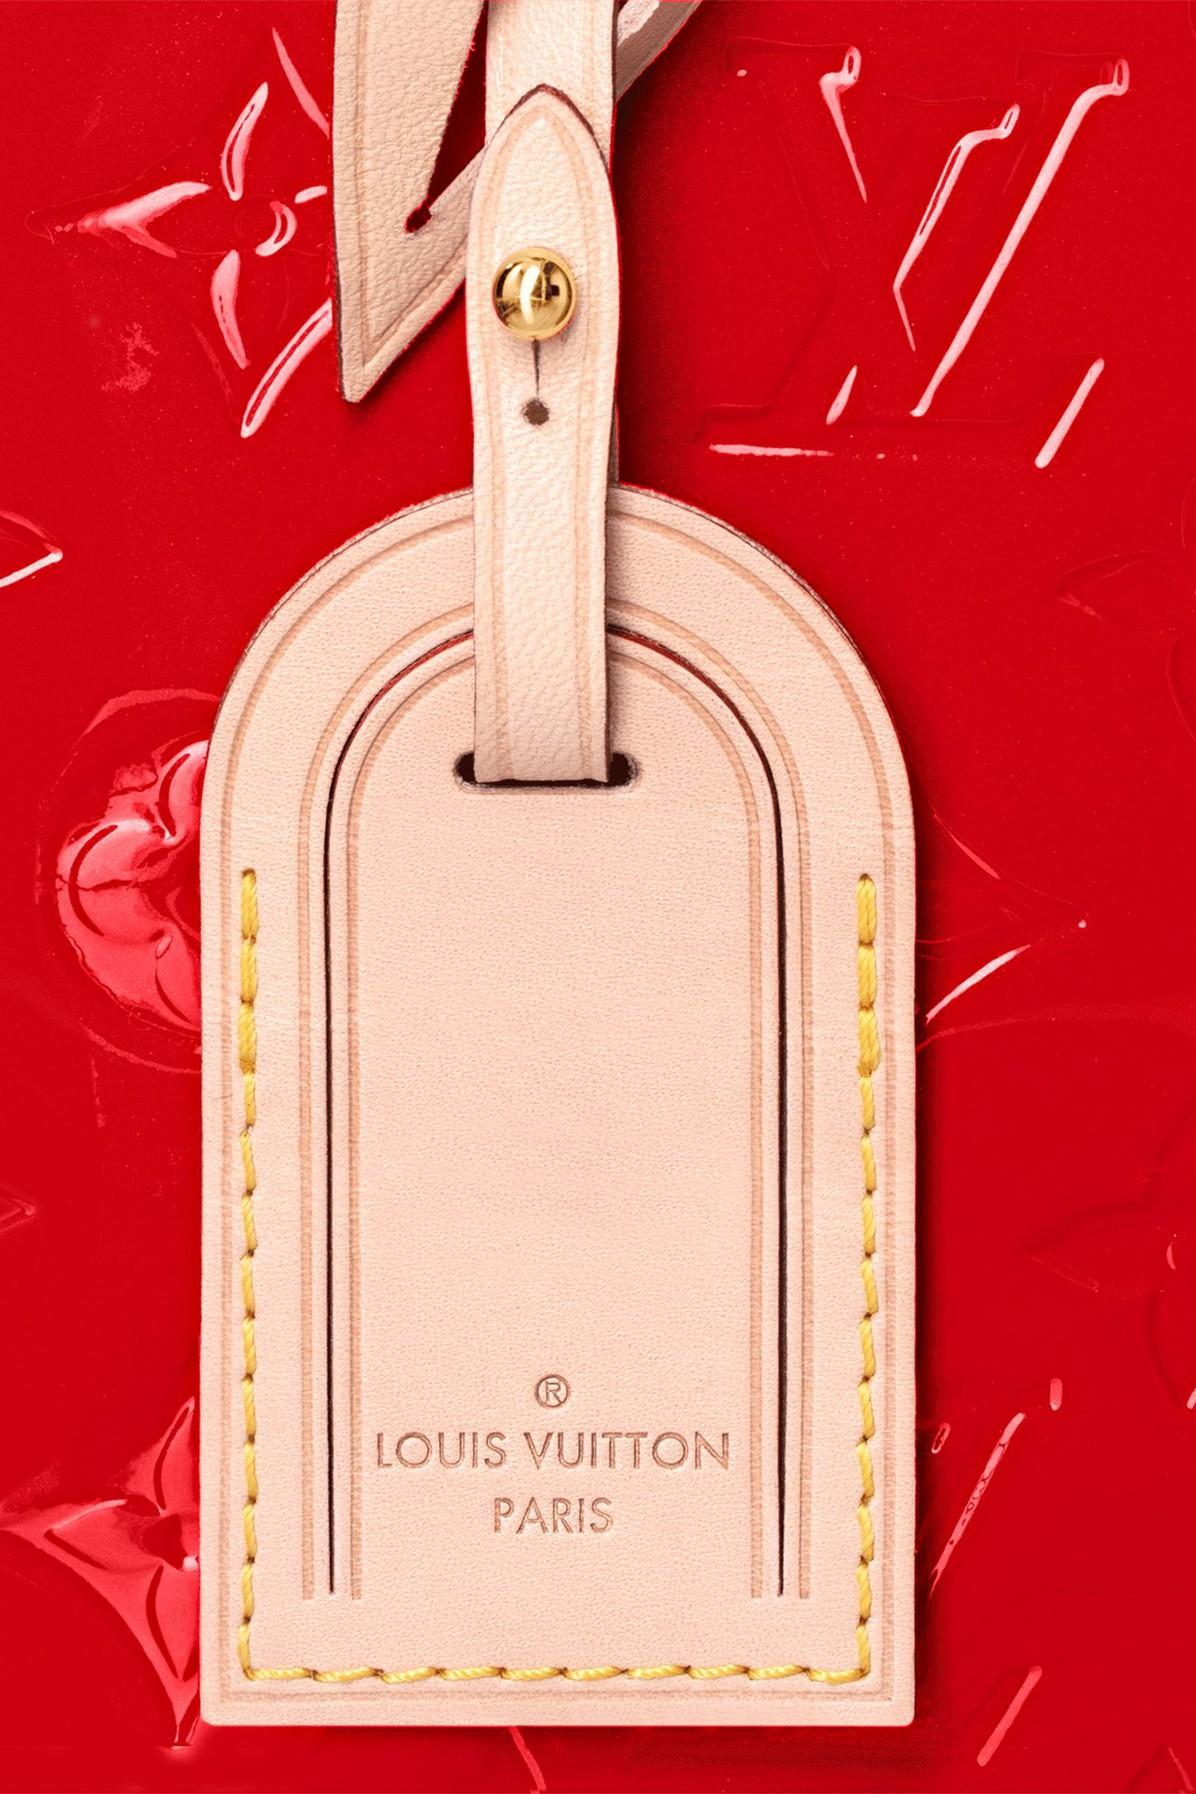 Louis Vuitton Onthego Monogram Giant Santa Monica Blue for Women